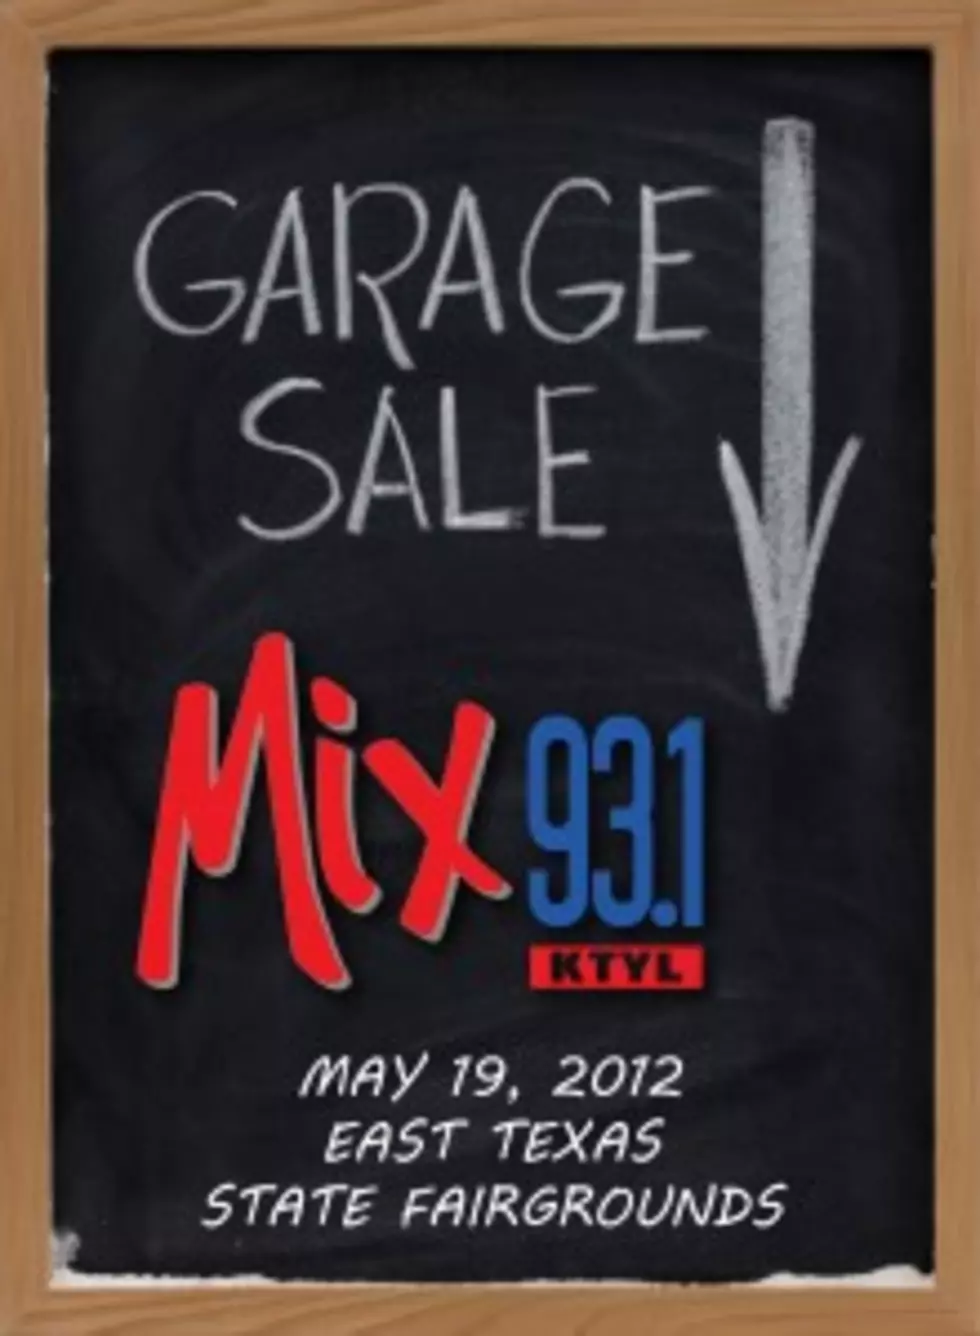 The Mix 93.1 Garage Sale